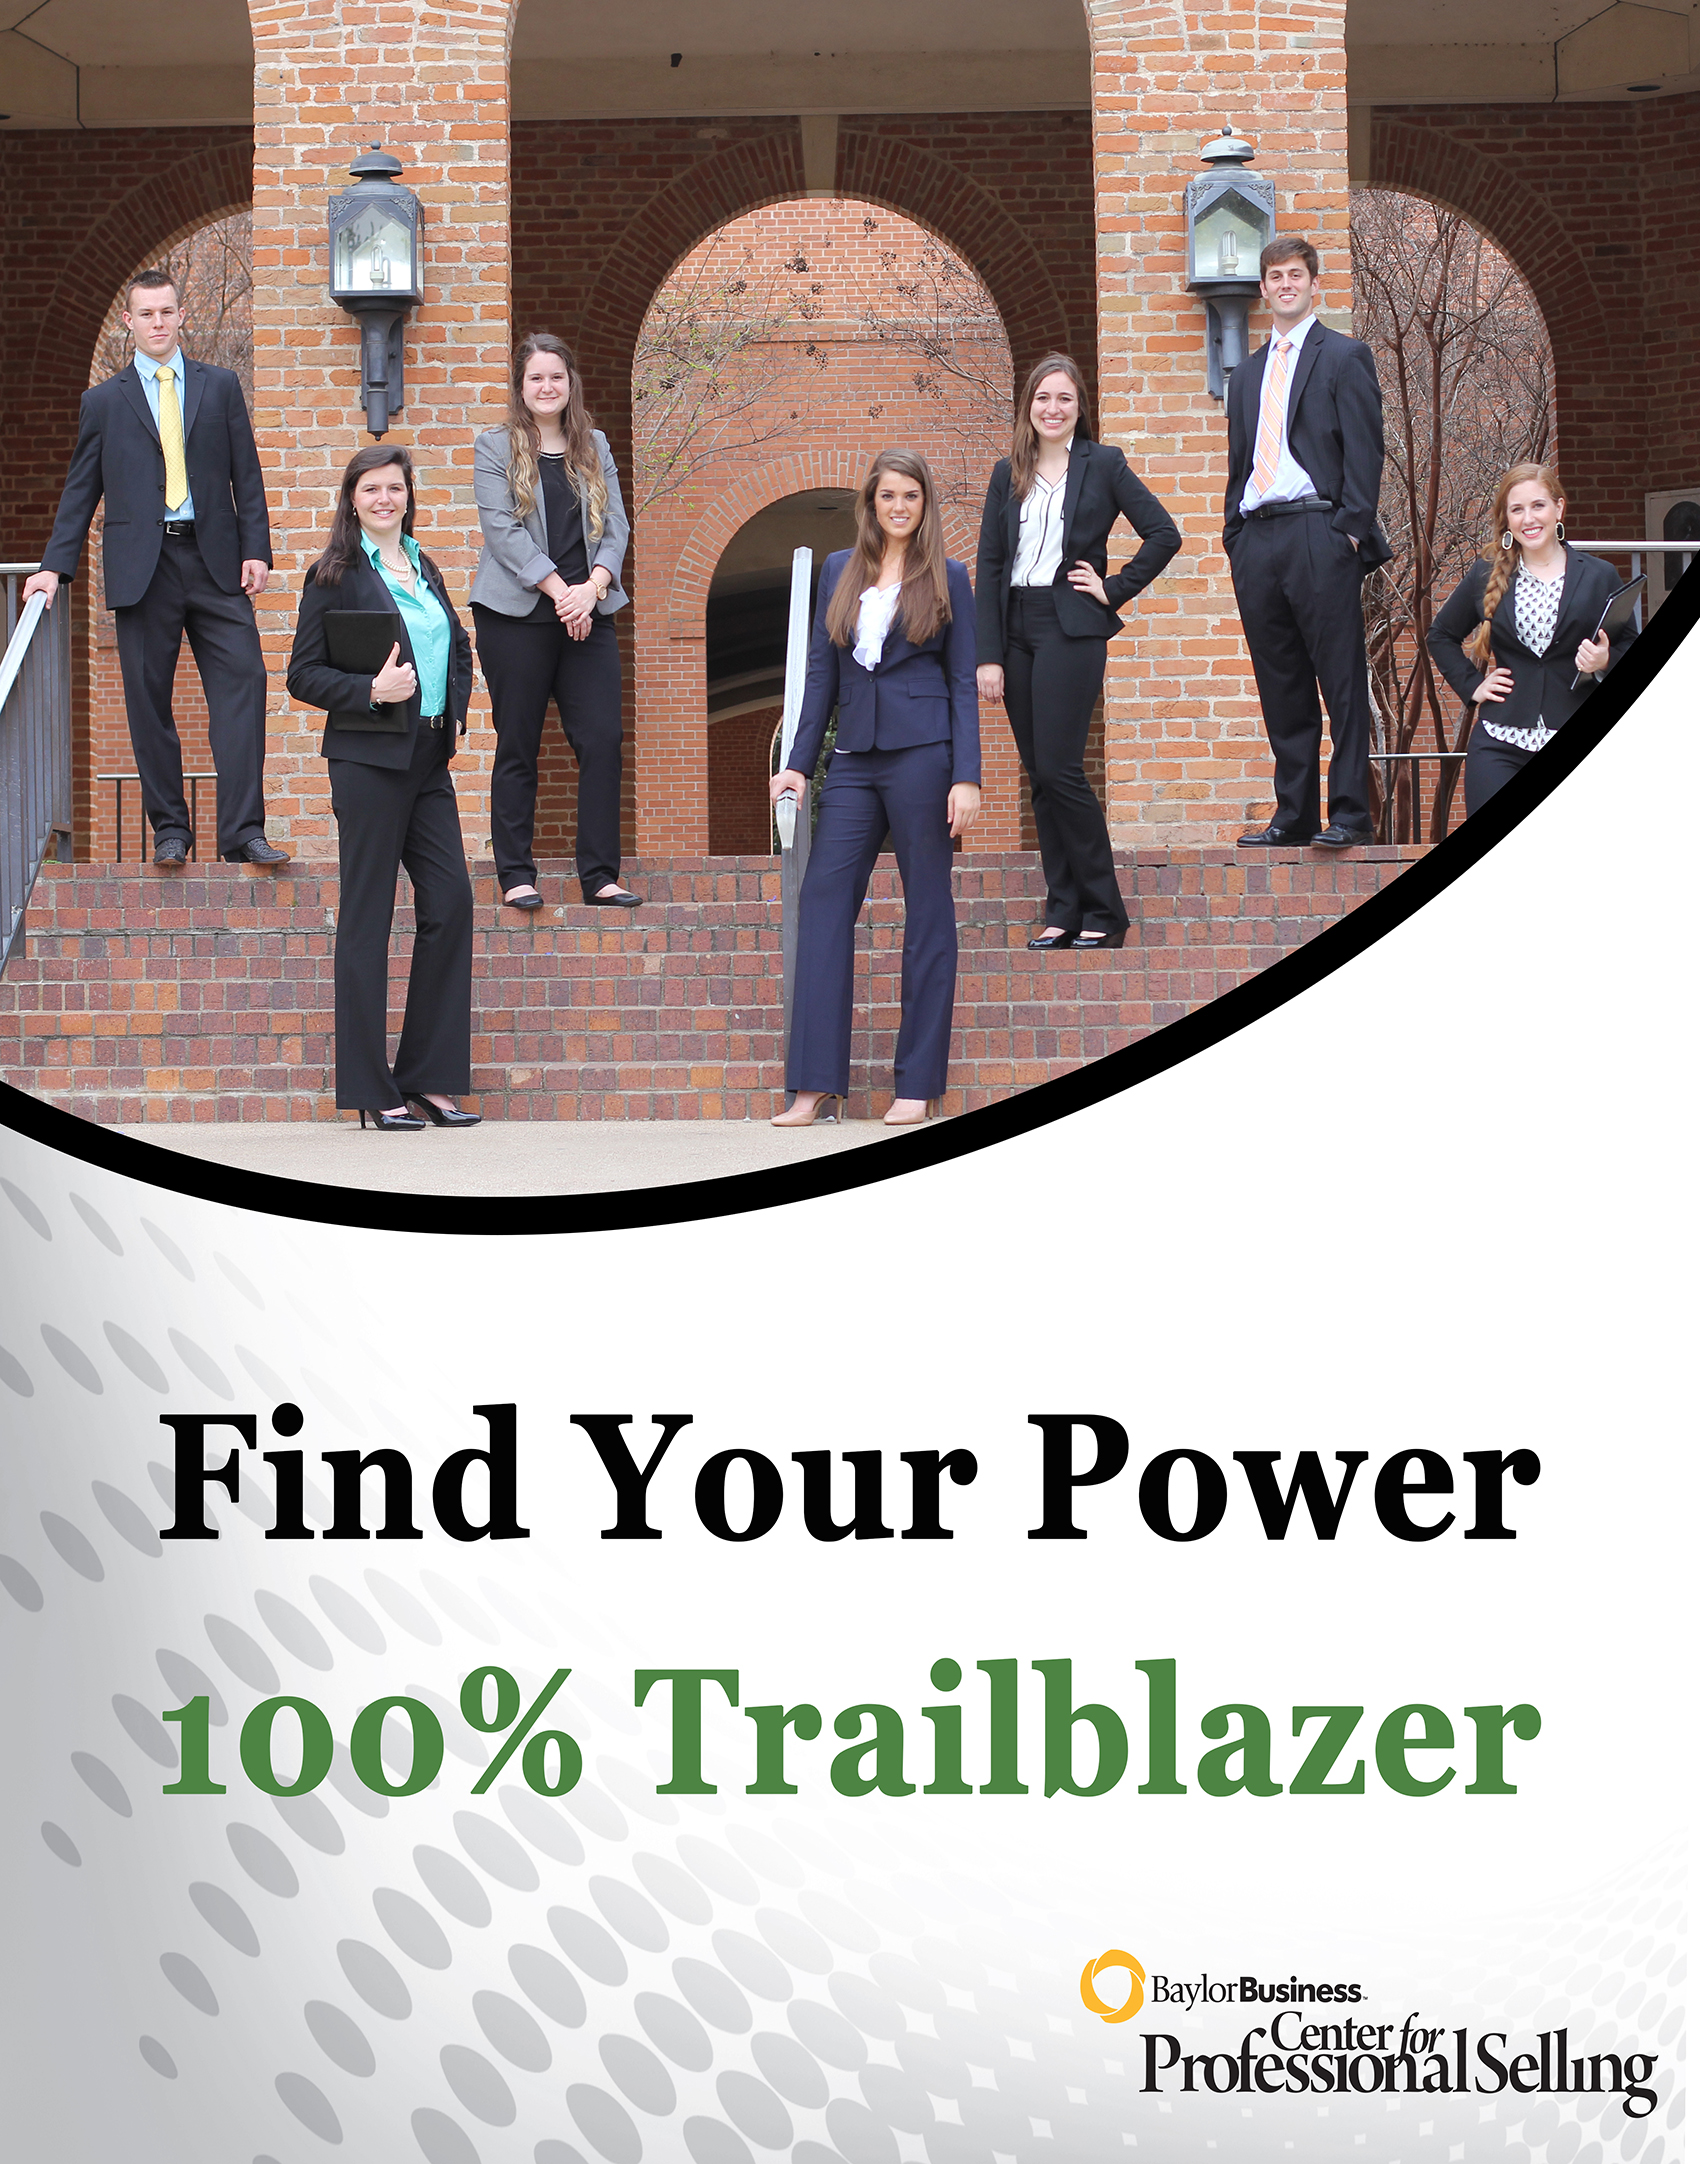 Find Your Power - 100% Trailblazer Ad 1